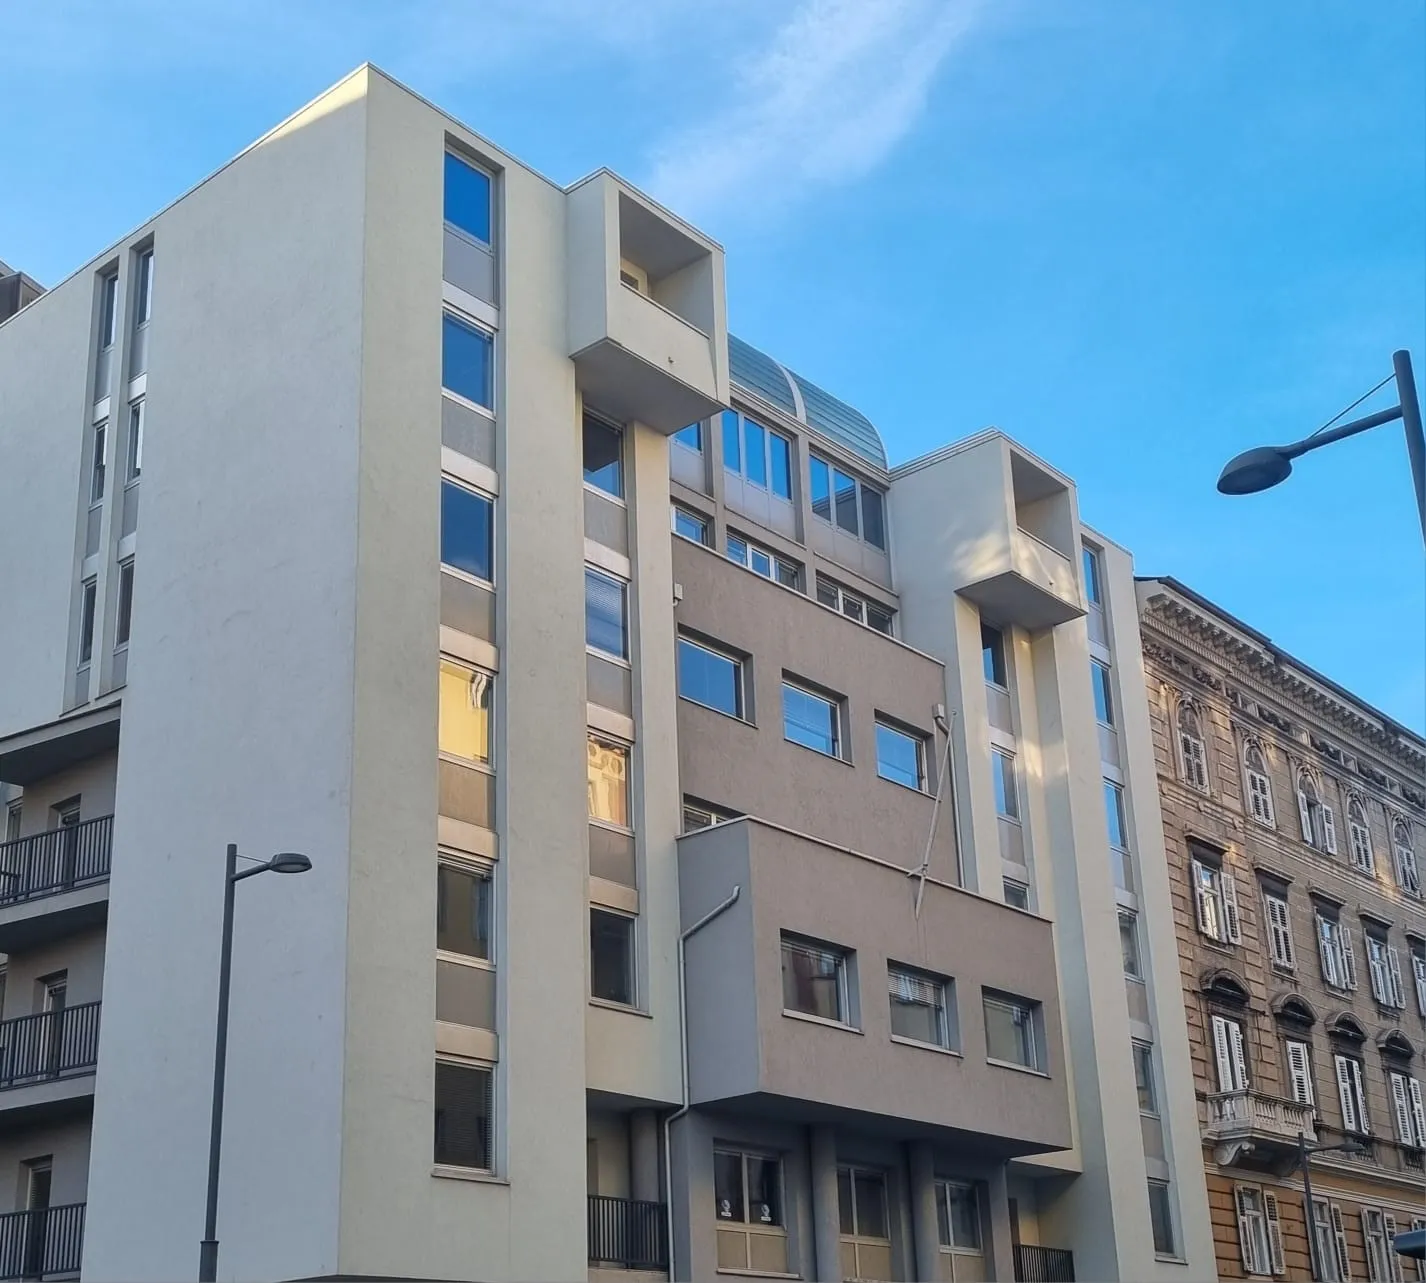 Eutonia presenta la sua nuova sede al centro di Trieste 